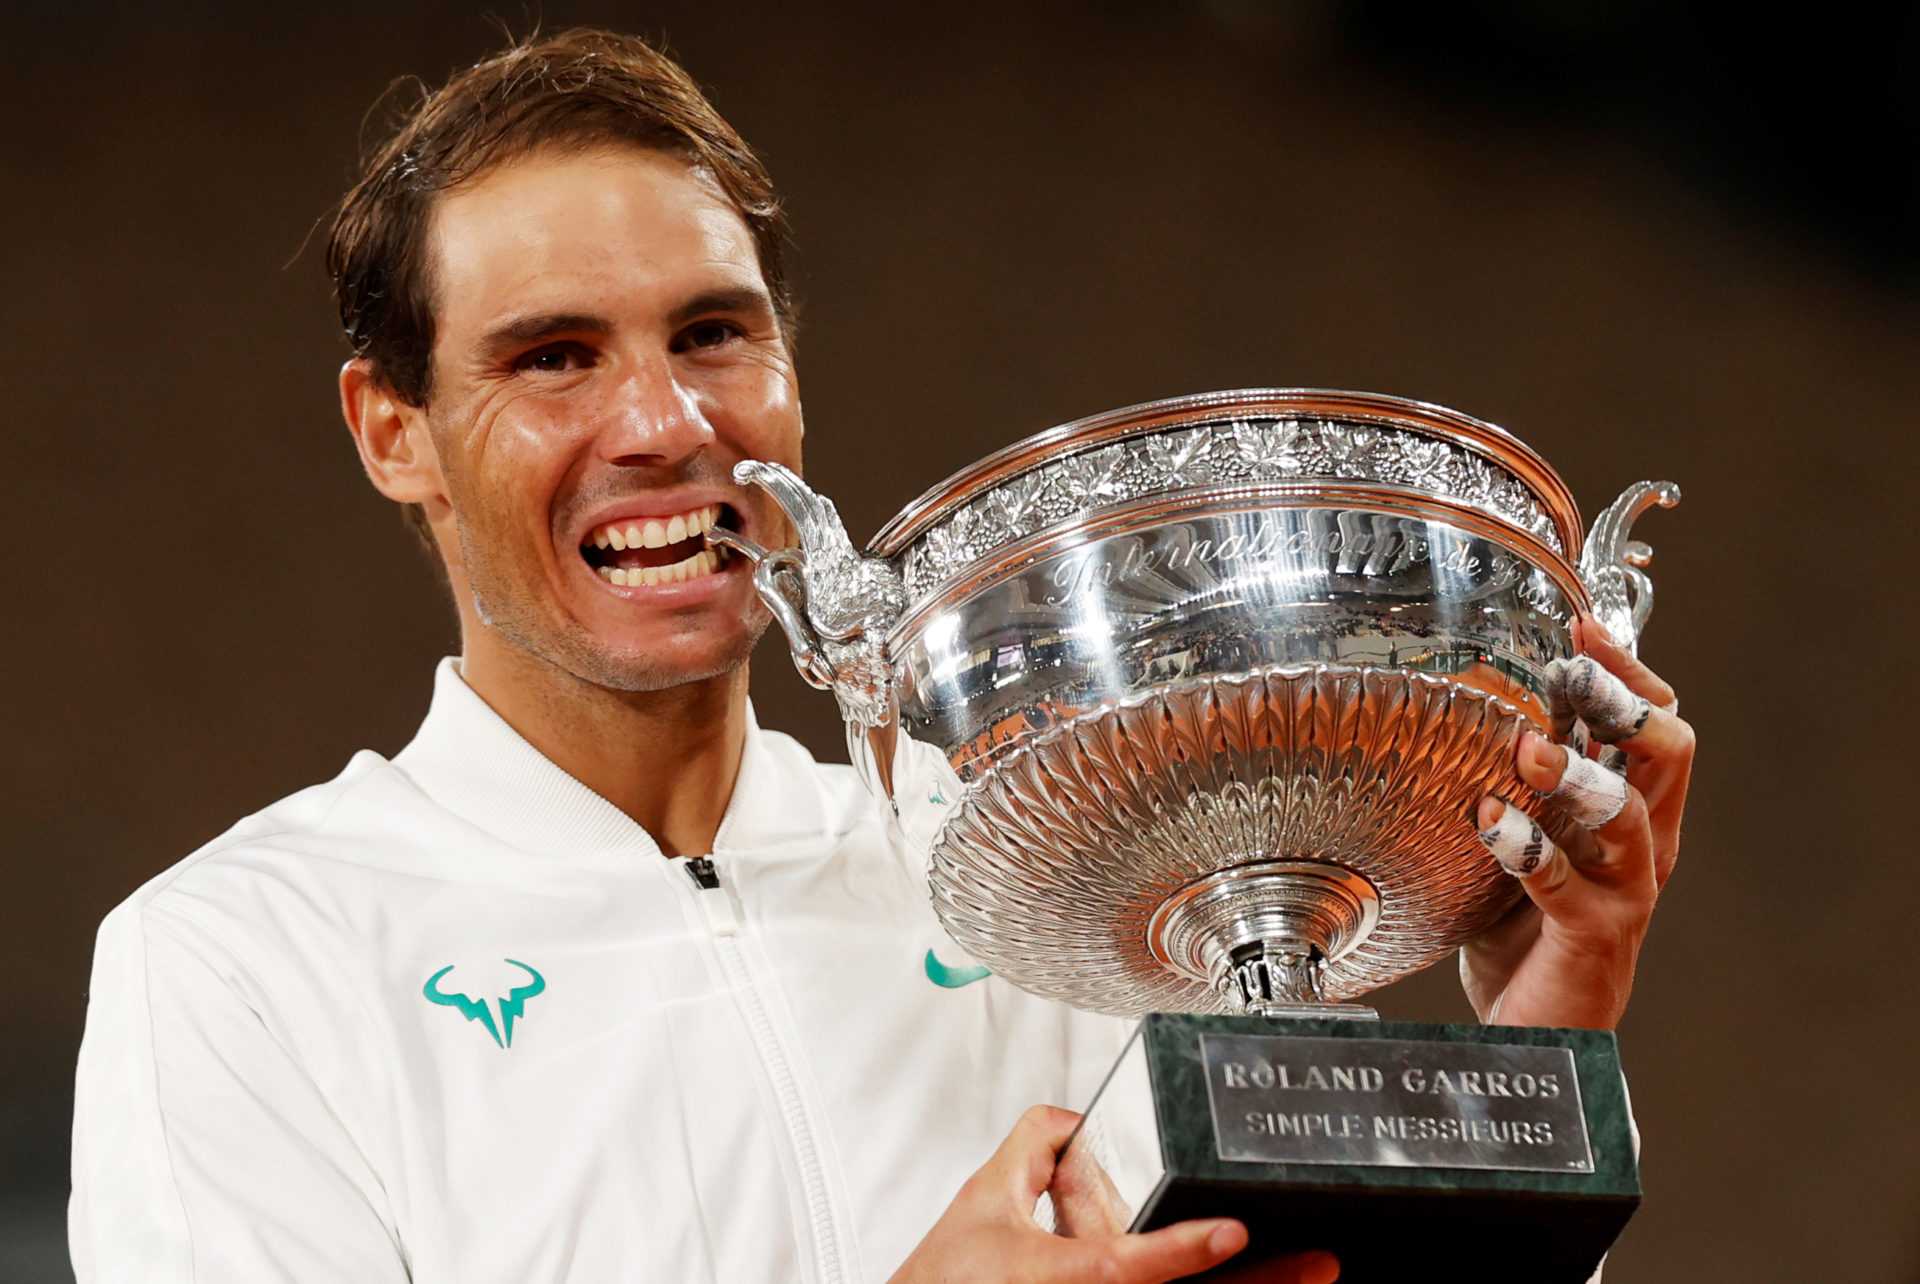 «Des mérites sportifs incontestables»: Rafael Nadal remporte un autre titre prestigieux après Roland-Garros 2020 Glory